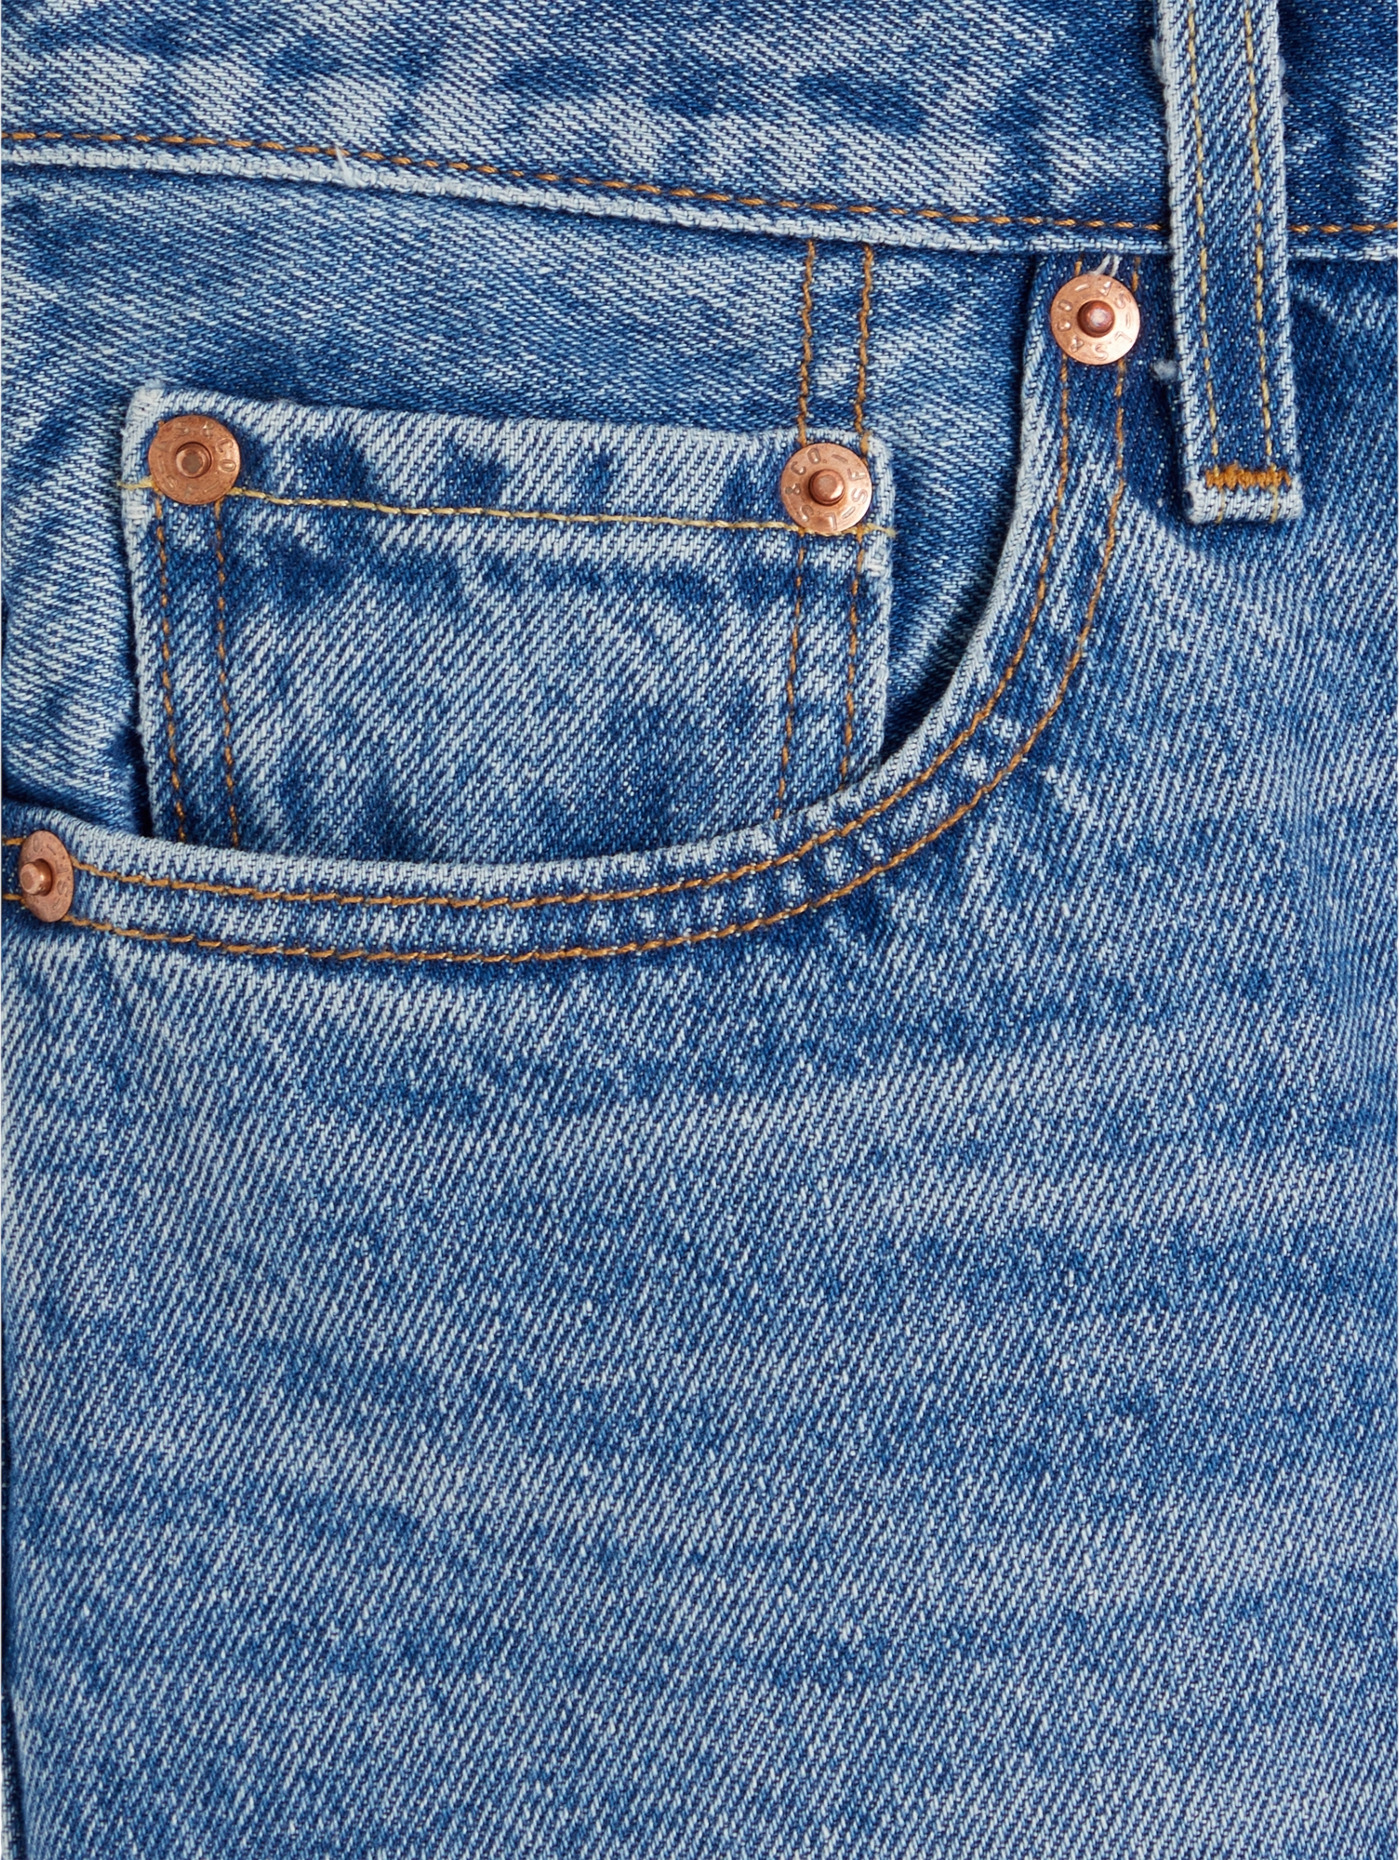 Джинсы Levis Women 80s Mom Jeans (A3506-0004) купить за 18999 руб. в  интернет-магазине JNS